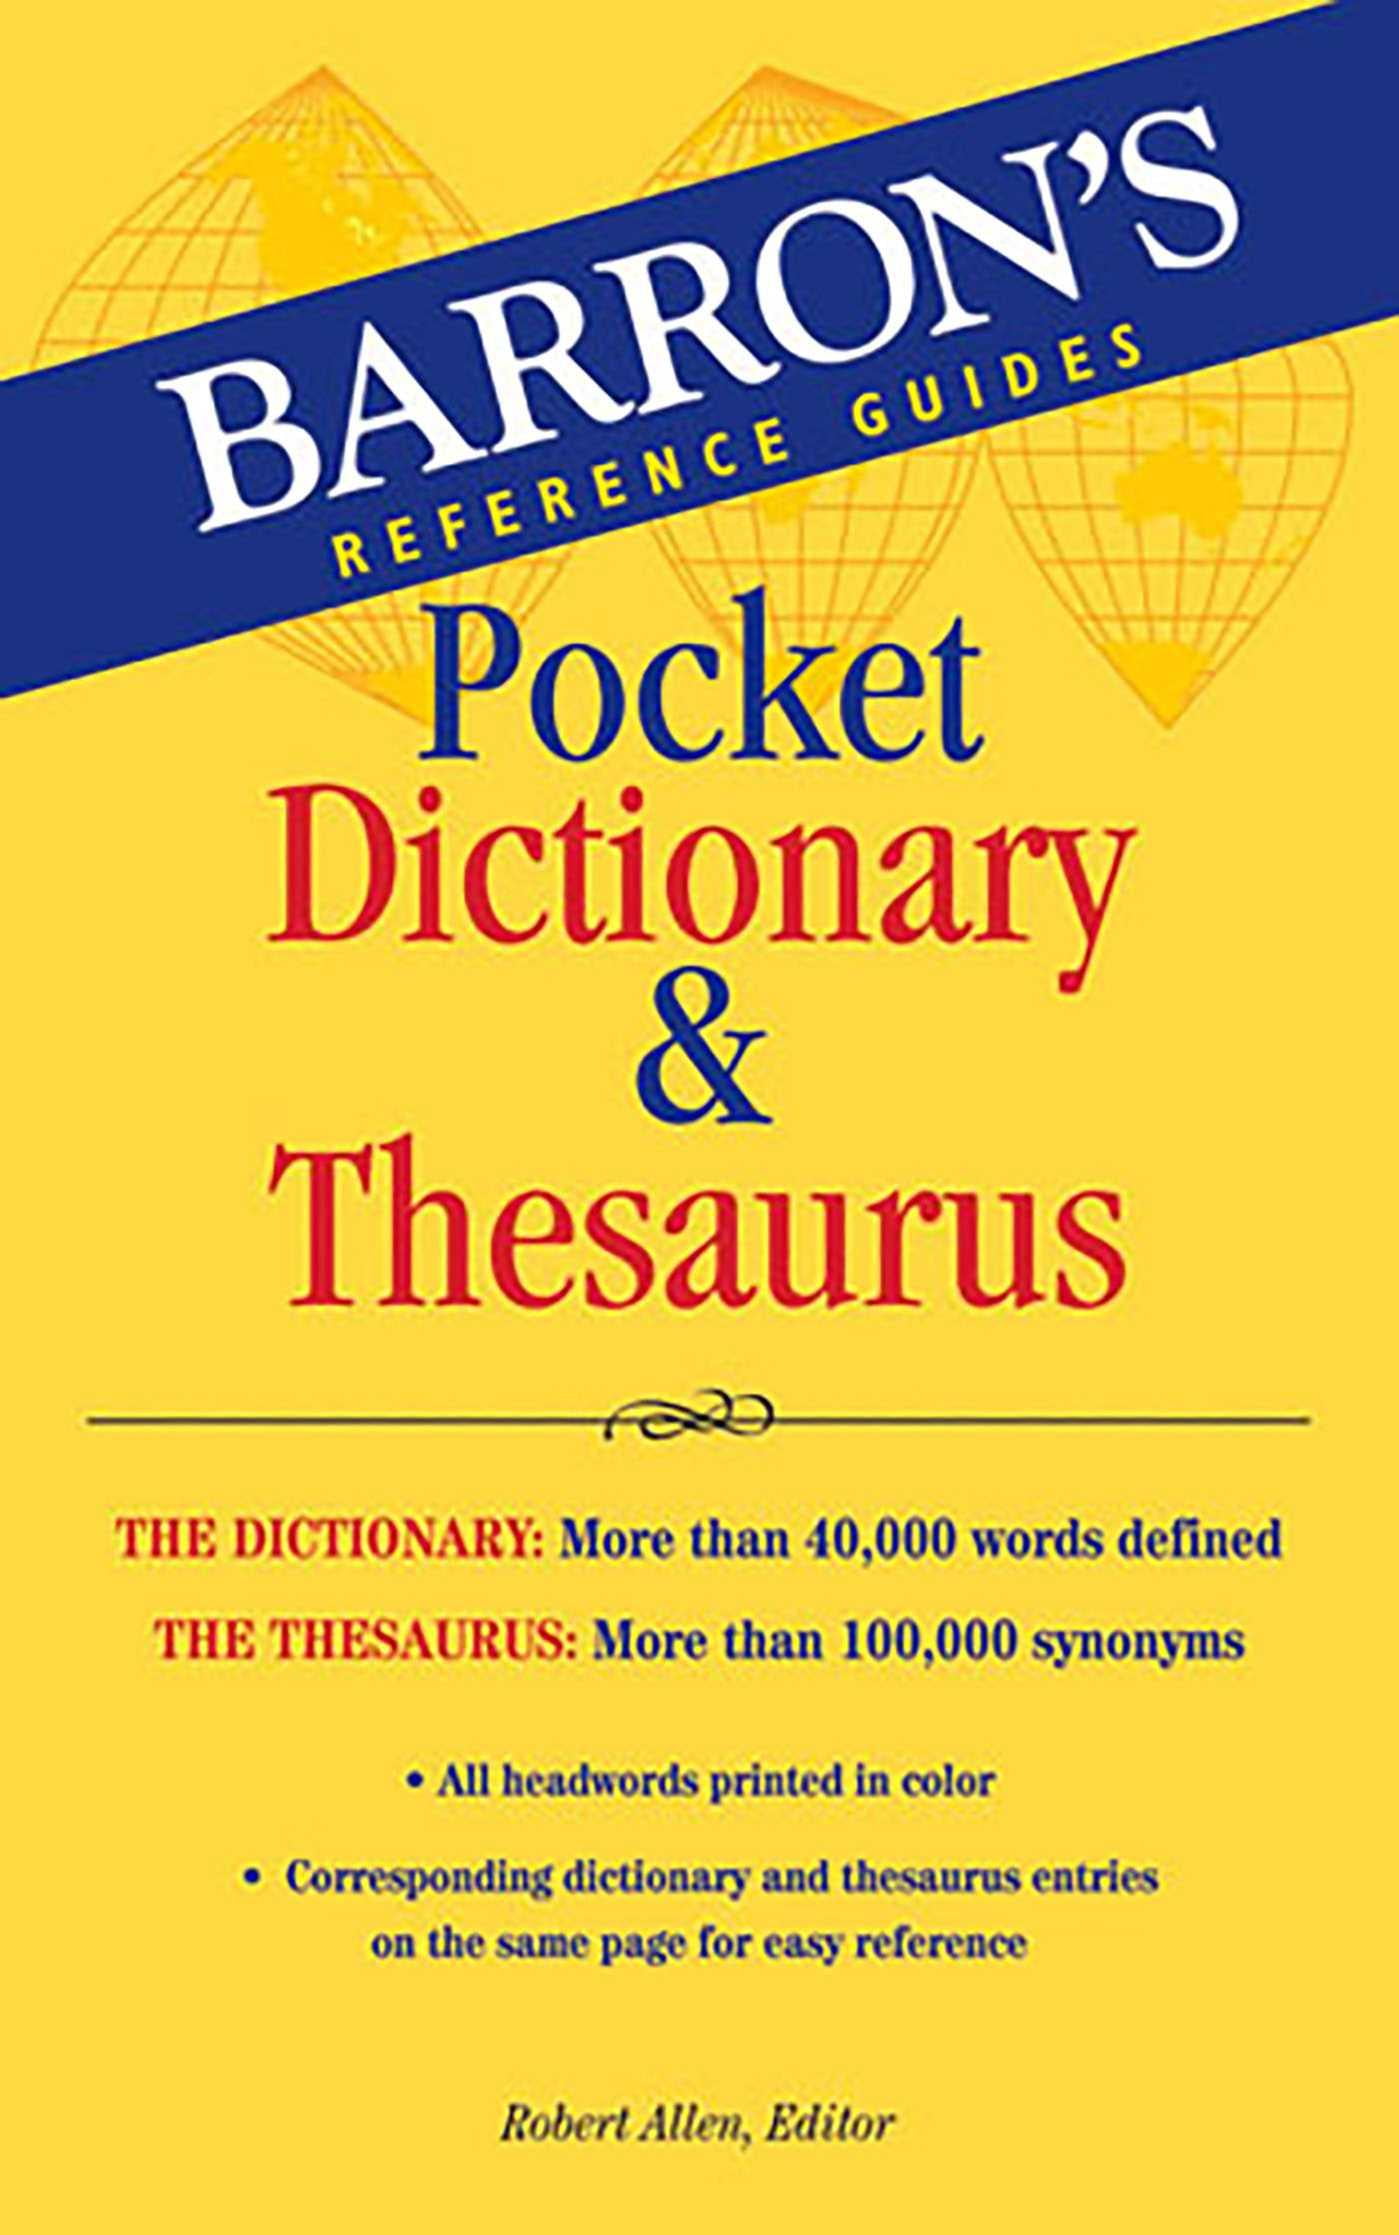 homework pocket dictionary